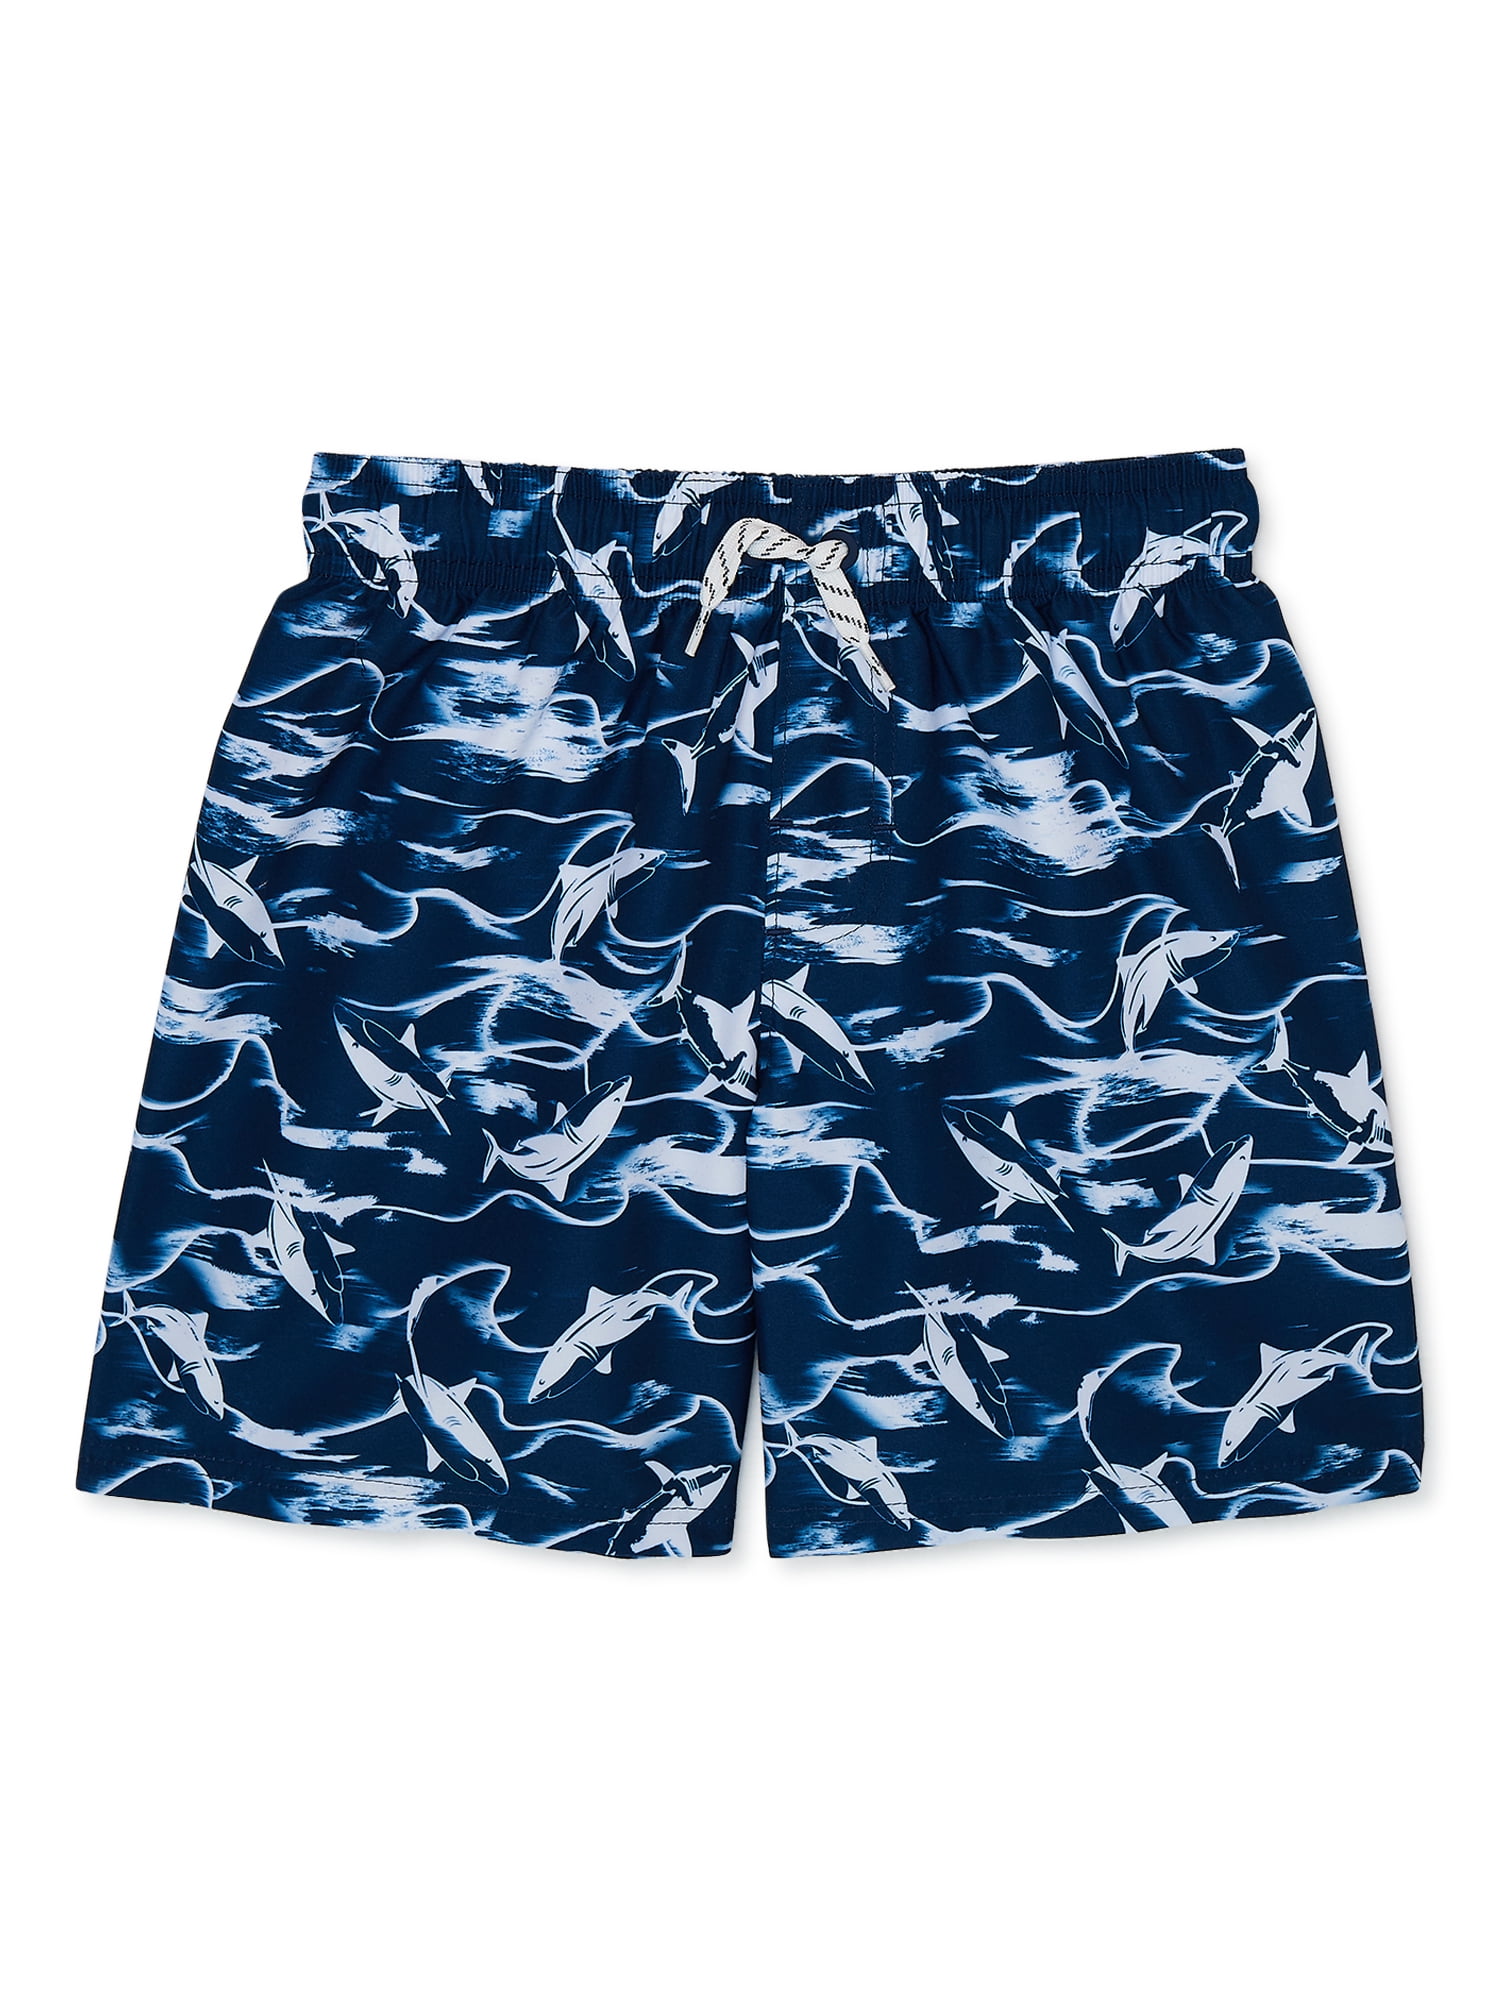 Wonder Nation Boys Value Allover Print Shark Swim Trunks, Sizes 4-18 & Husky